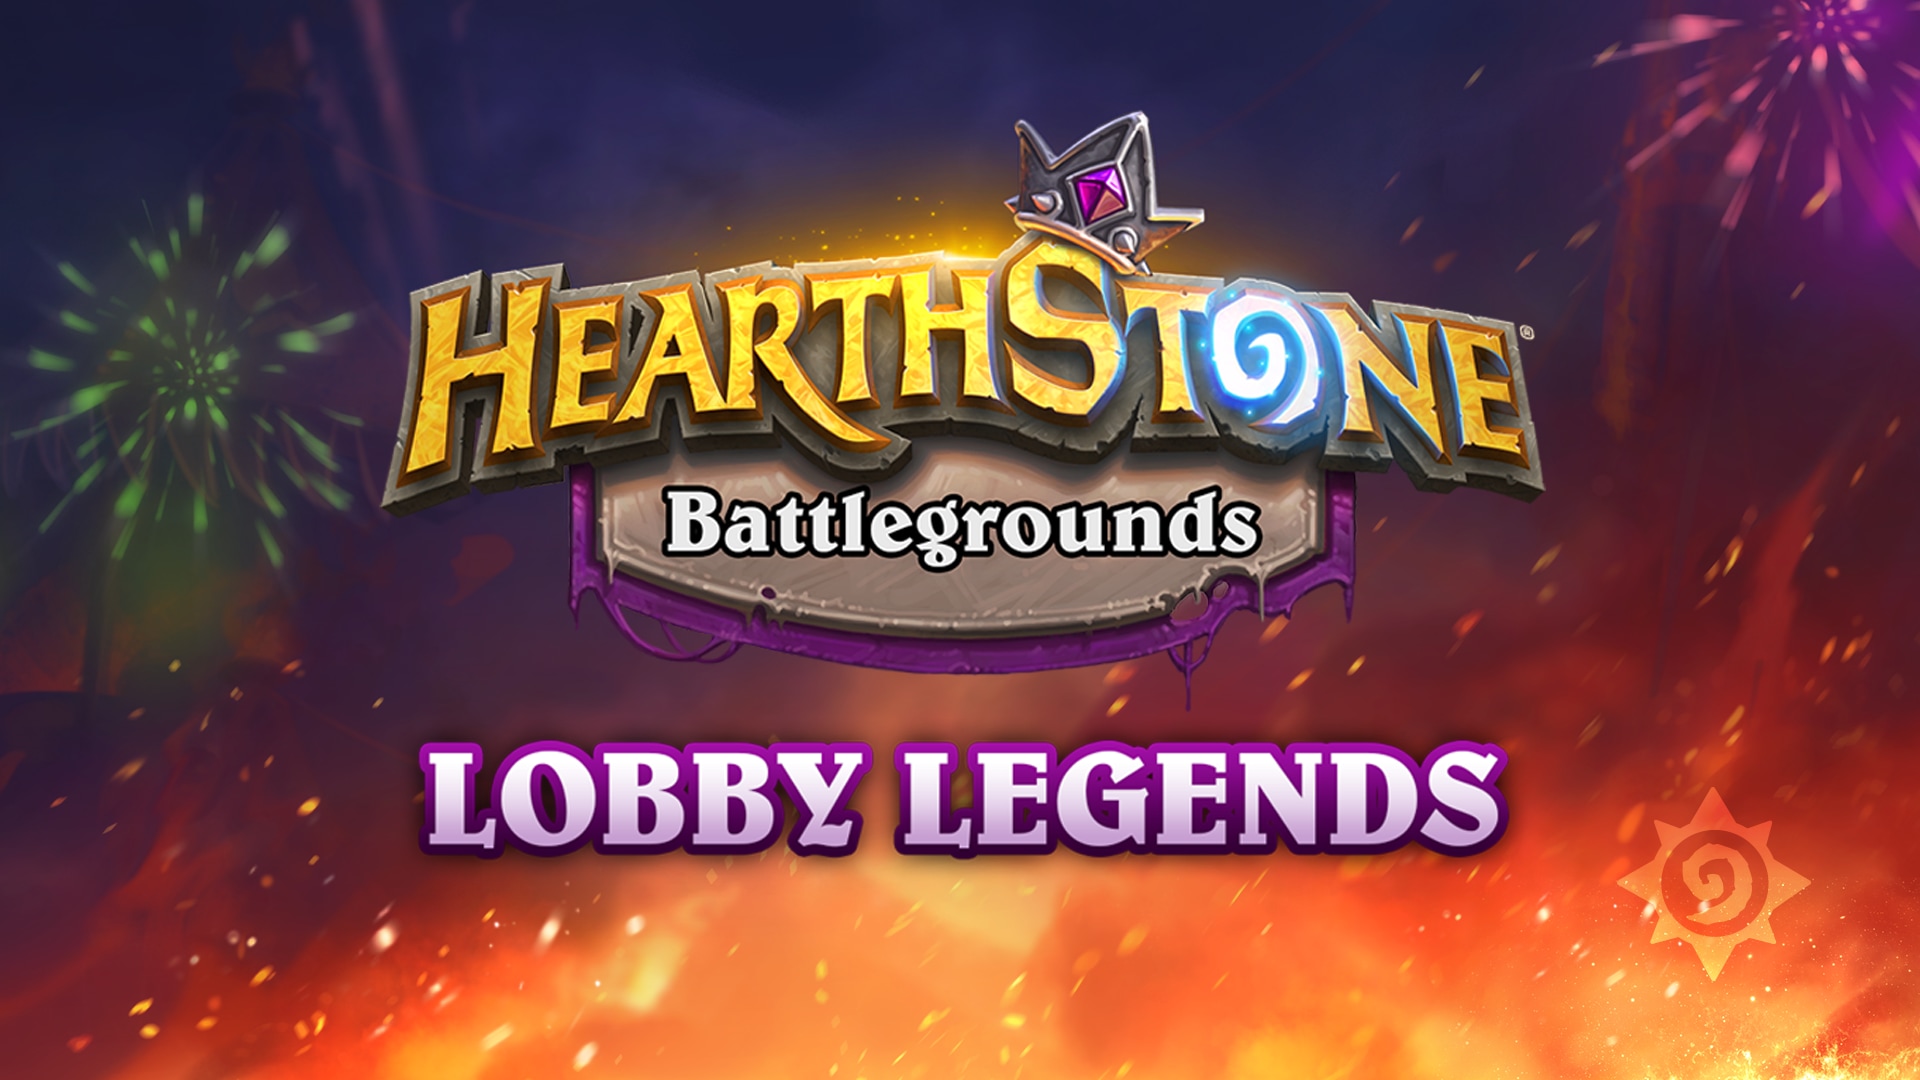 Il Festival del Fuoco arriva nella Battaglia con l'evento Battlegrounds: Lobby Legends!